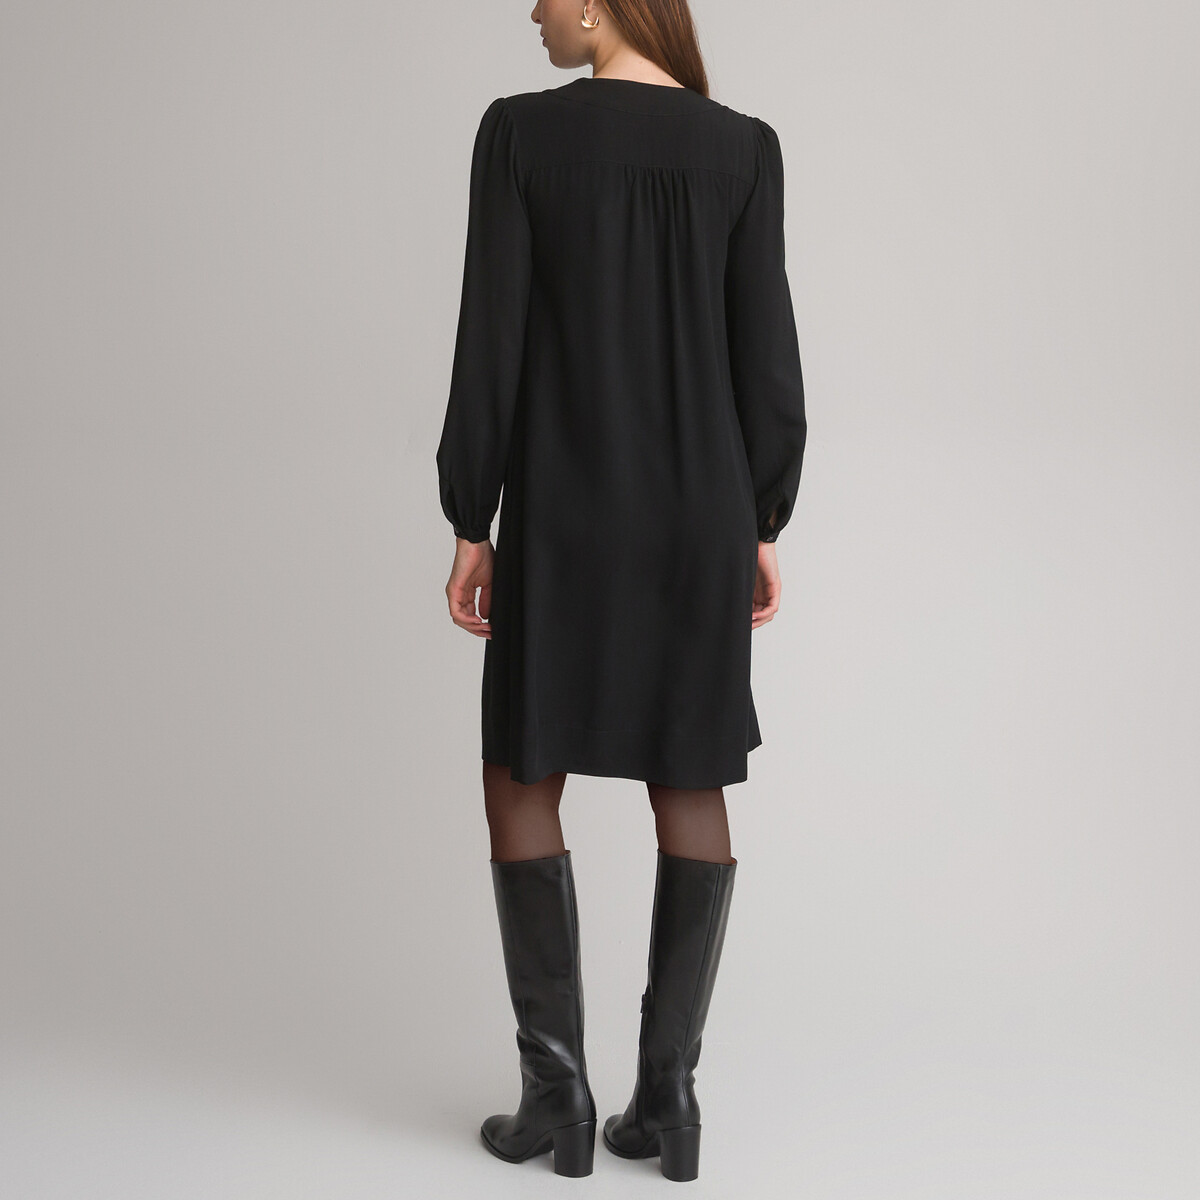 Платье-миди Расклешенное 48 черный LaRedoute, размер 48 - фото 4